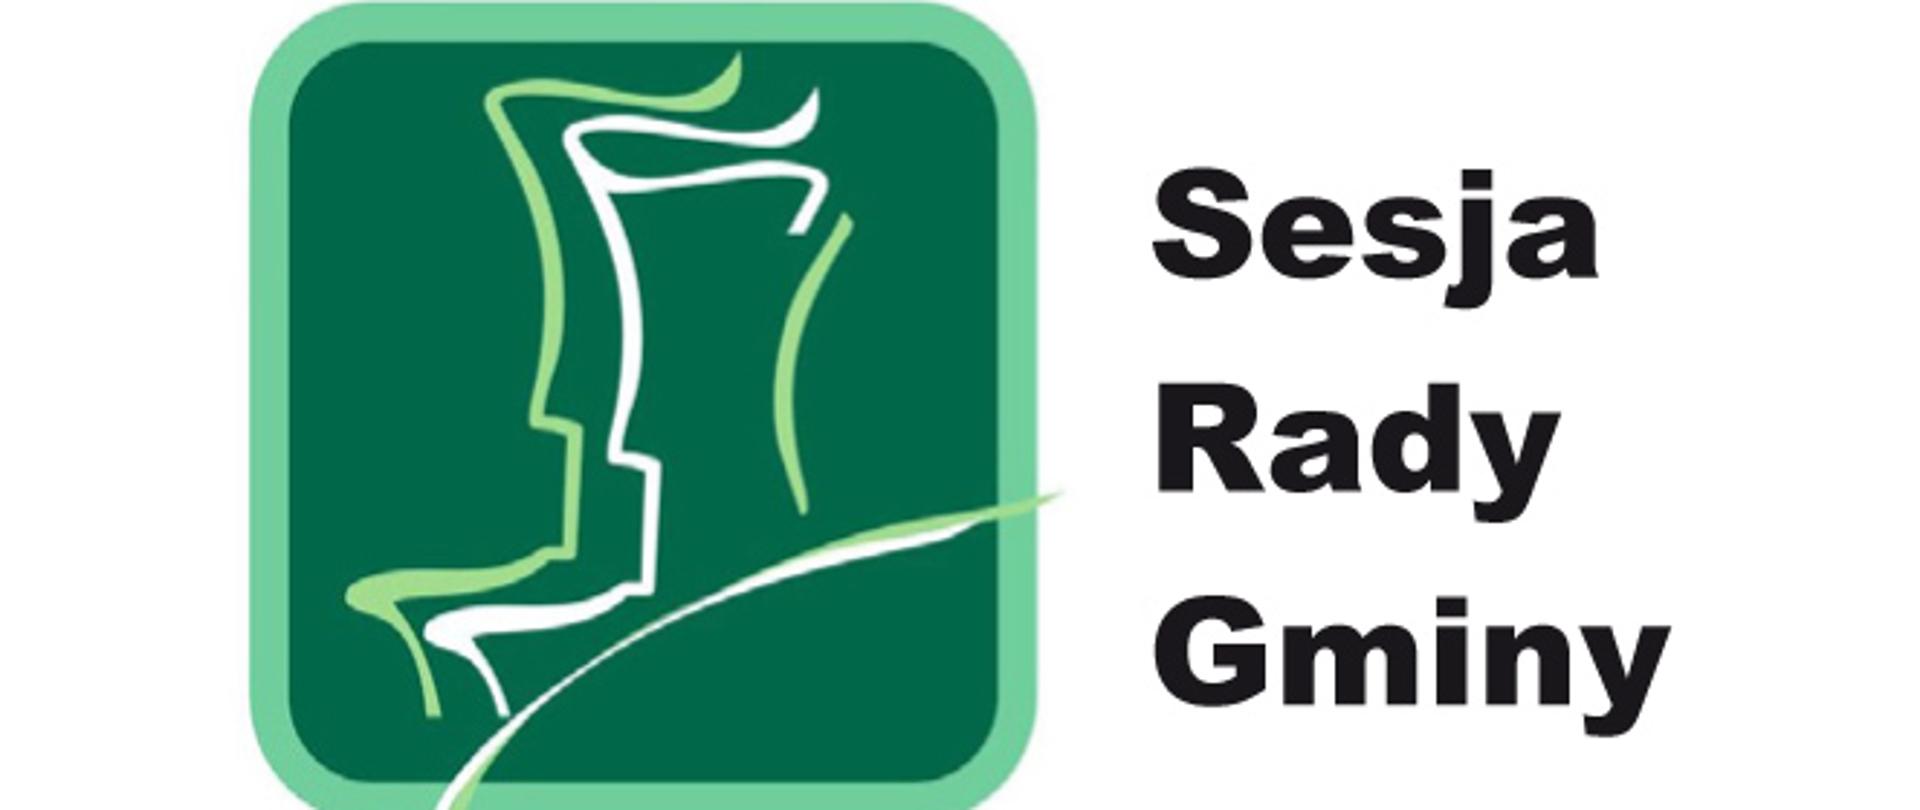 Grafika przedstawia biały obrys postaci na zielonym tle oraz napis Sesja rady gminy. 